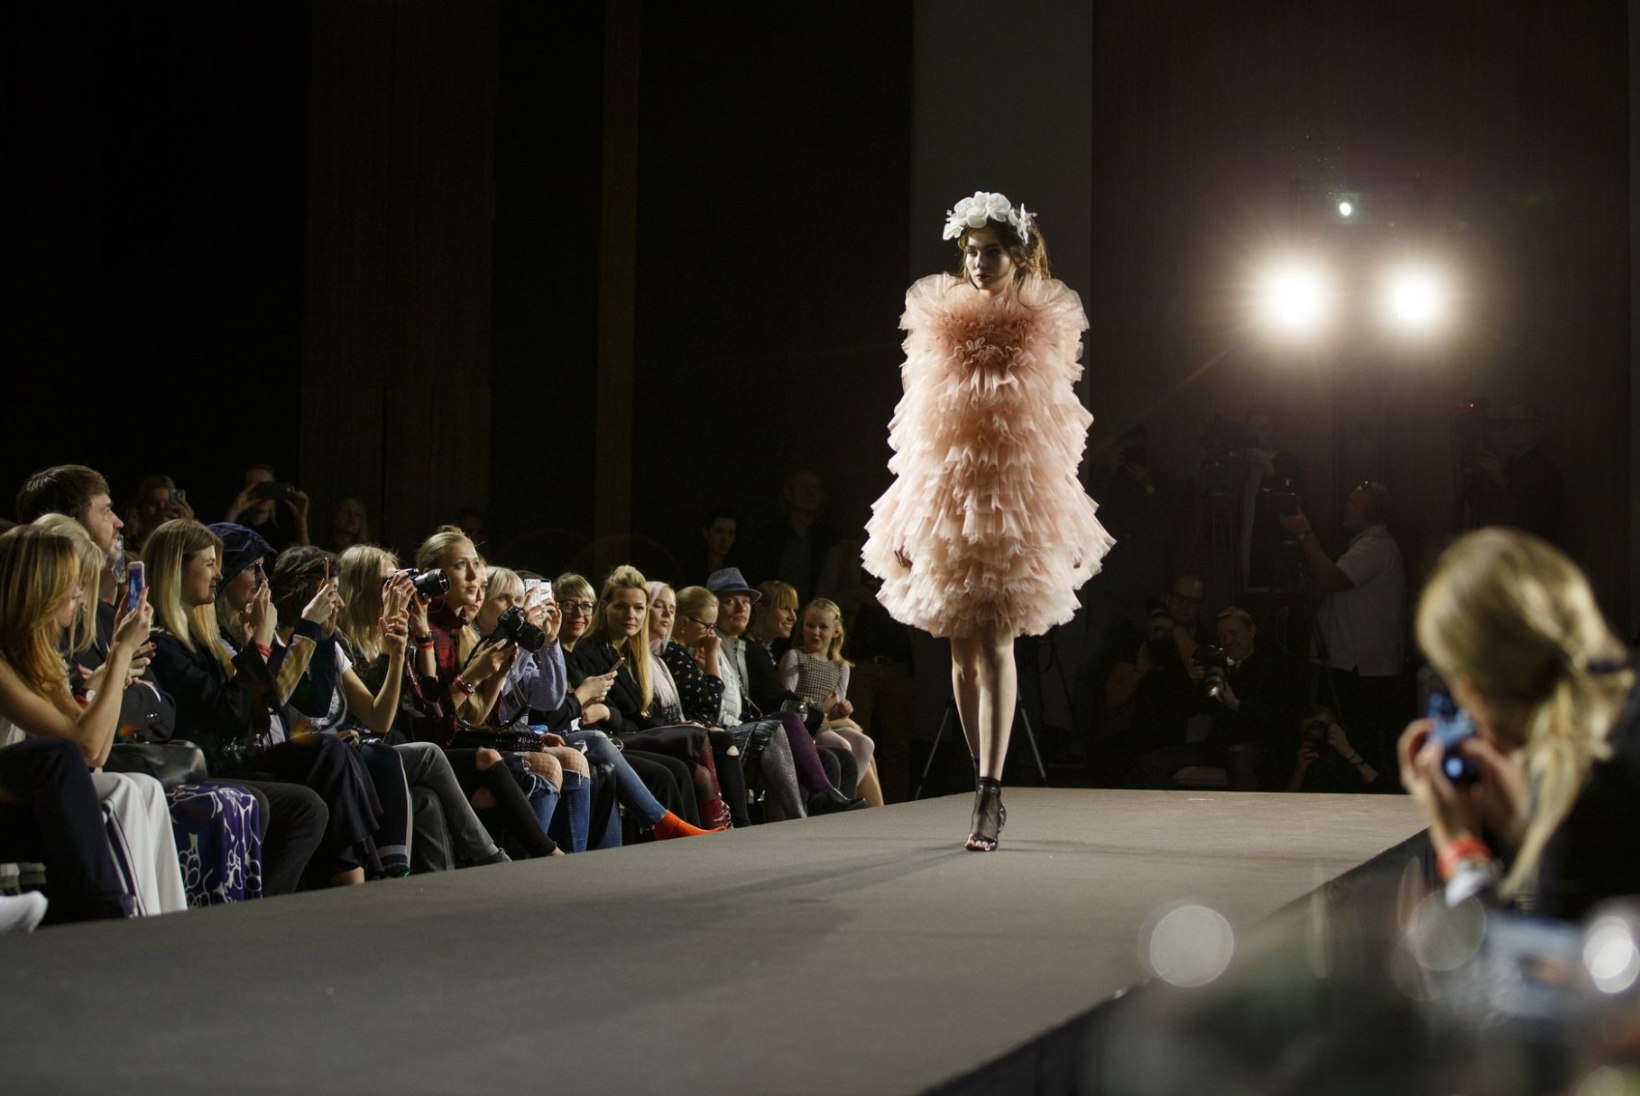 Eesti moe tähtsündmus Tallinn Fashion Week naaseb kevadel uues kuues